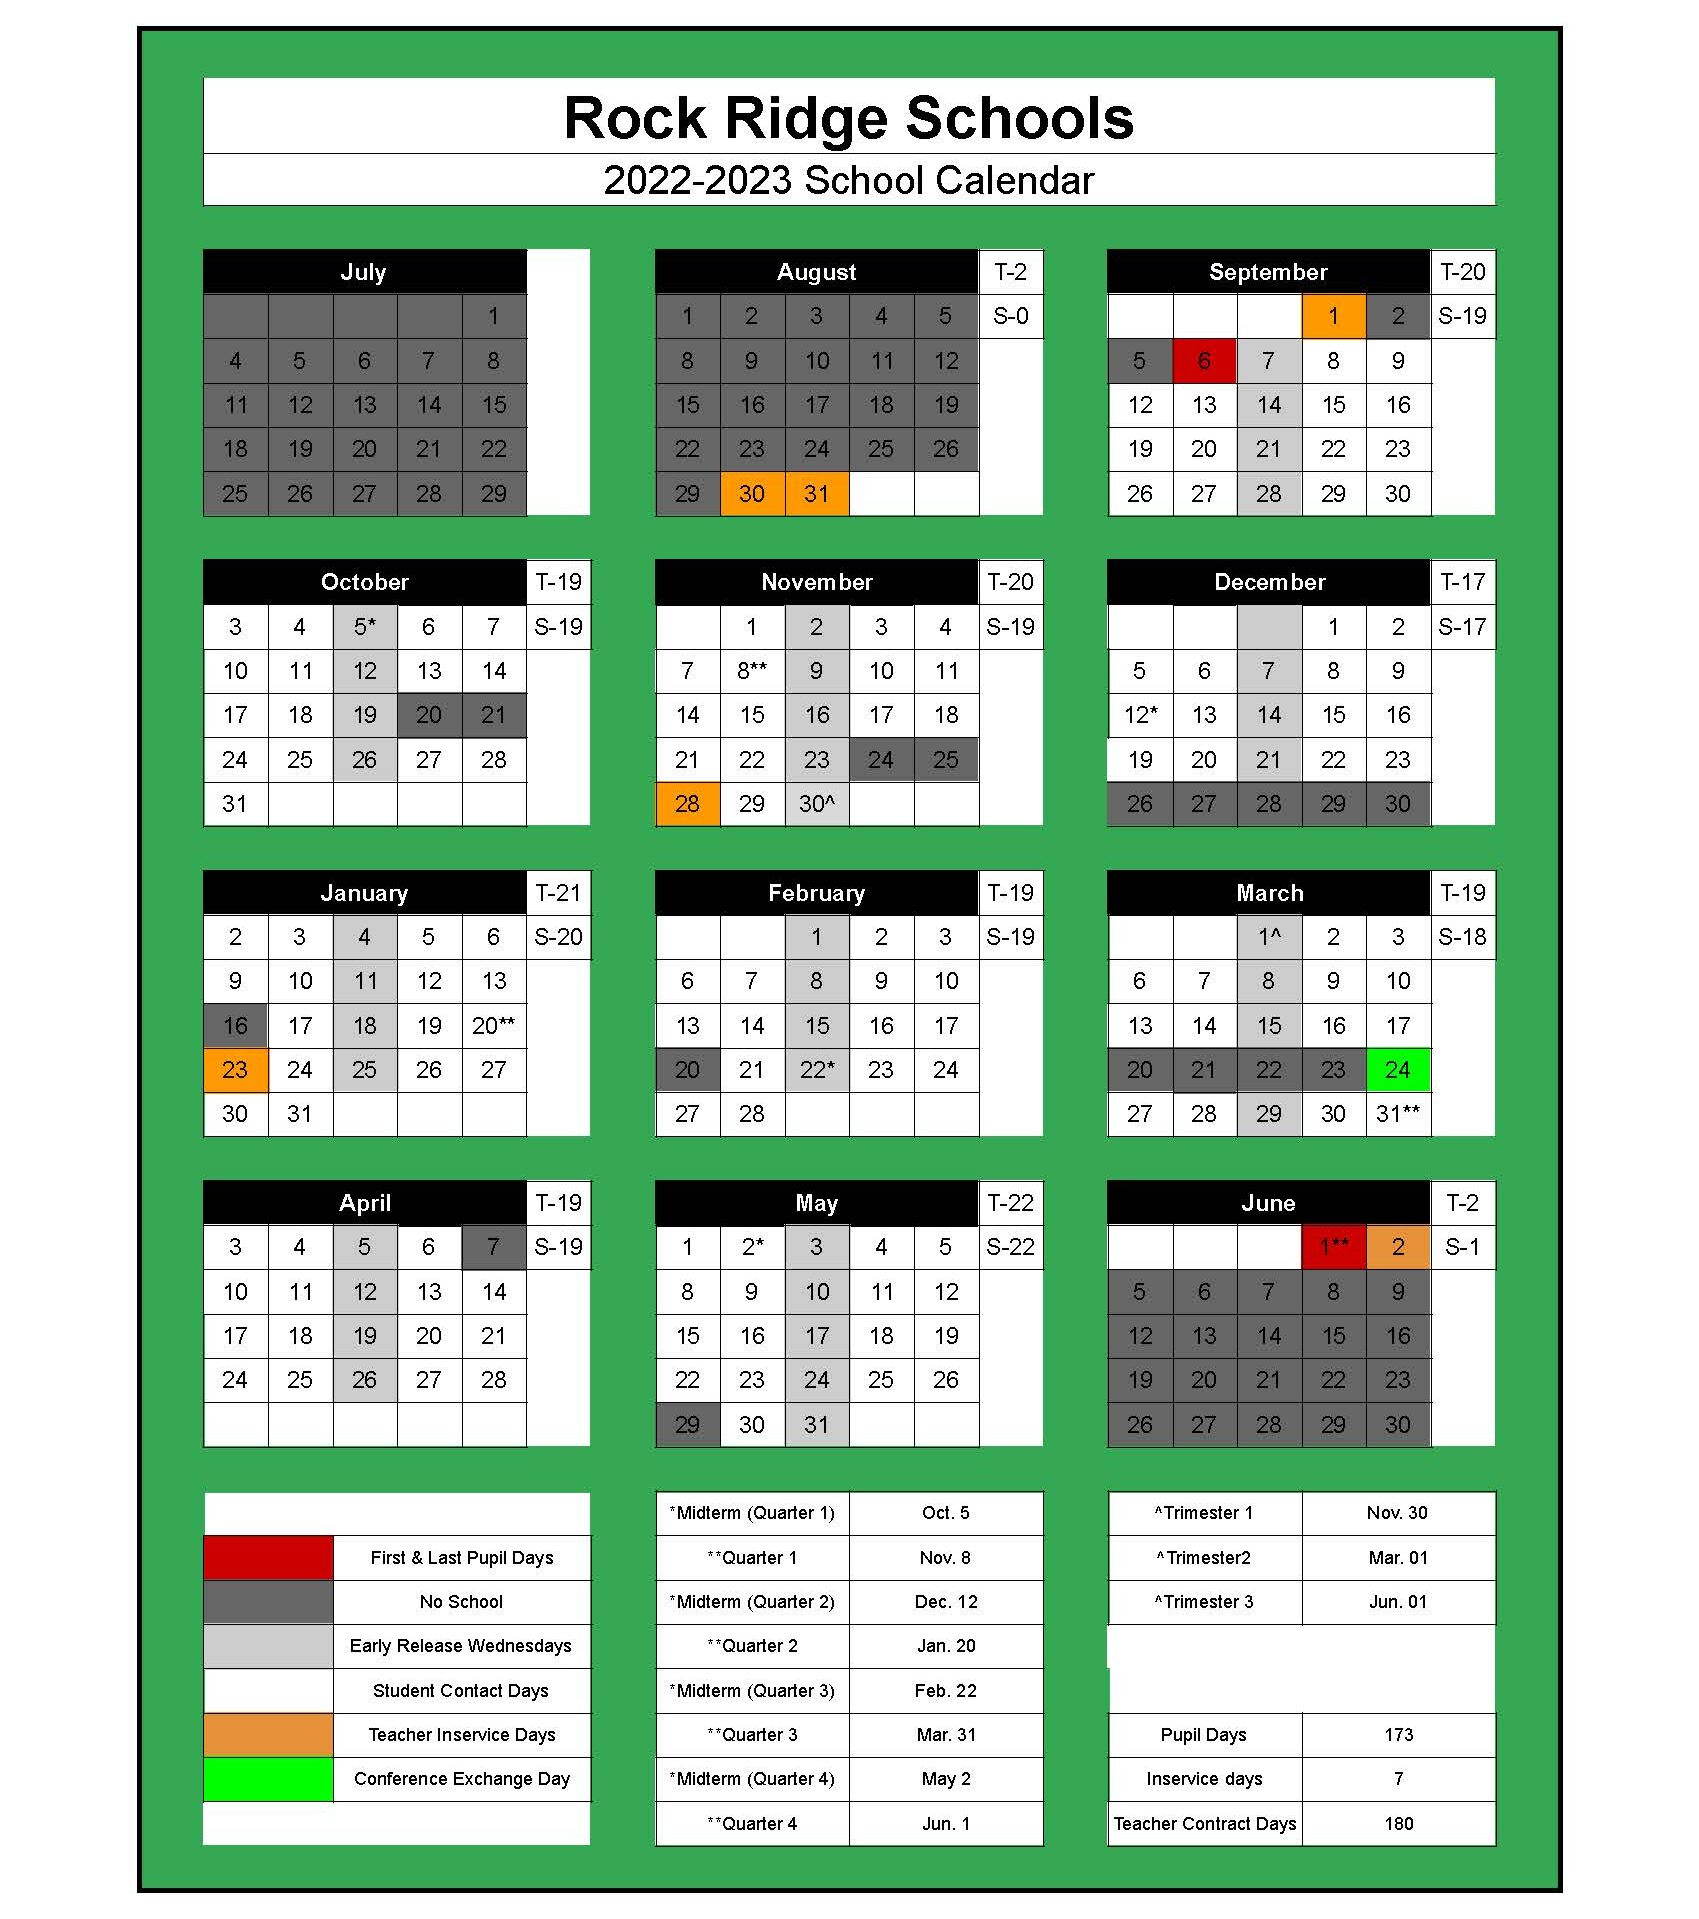 Rock Ridge Public Schools Calendar 2022 and 2023 PublicHolidays com